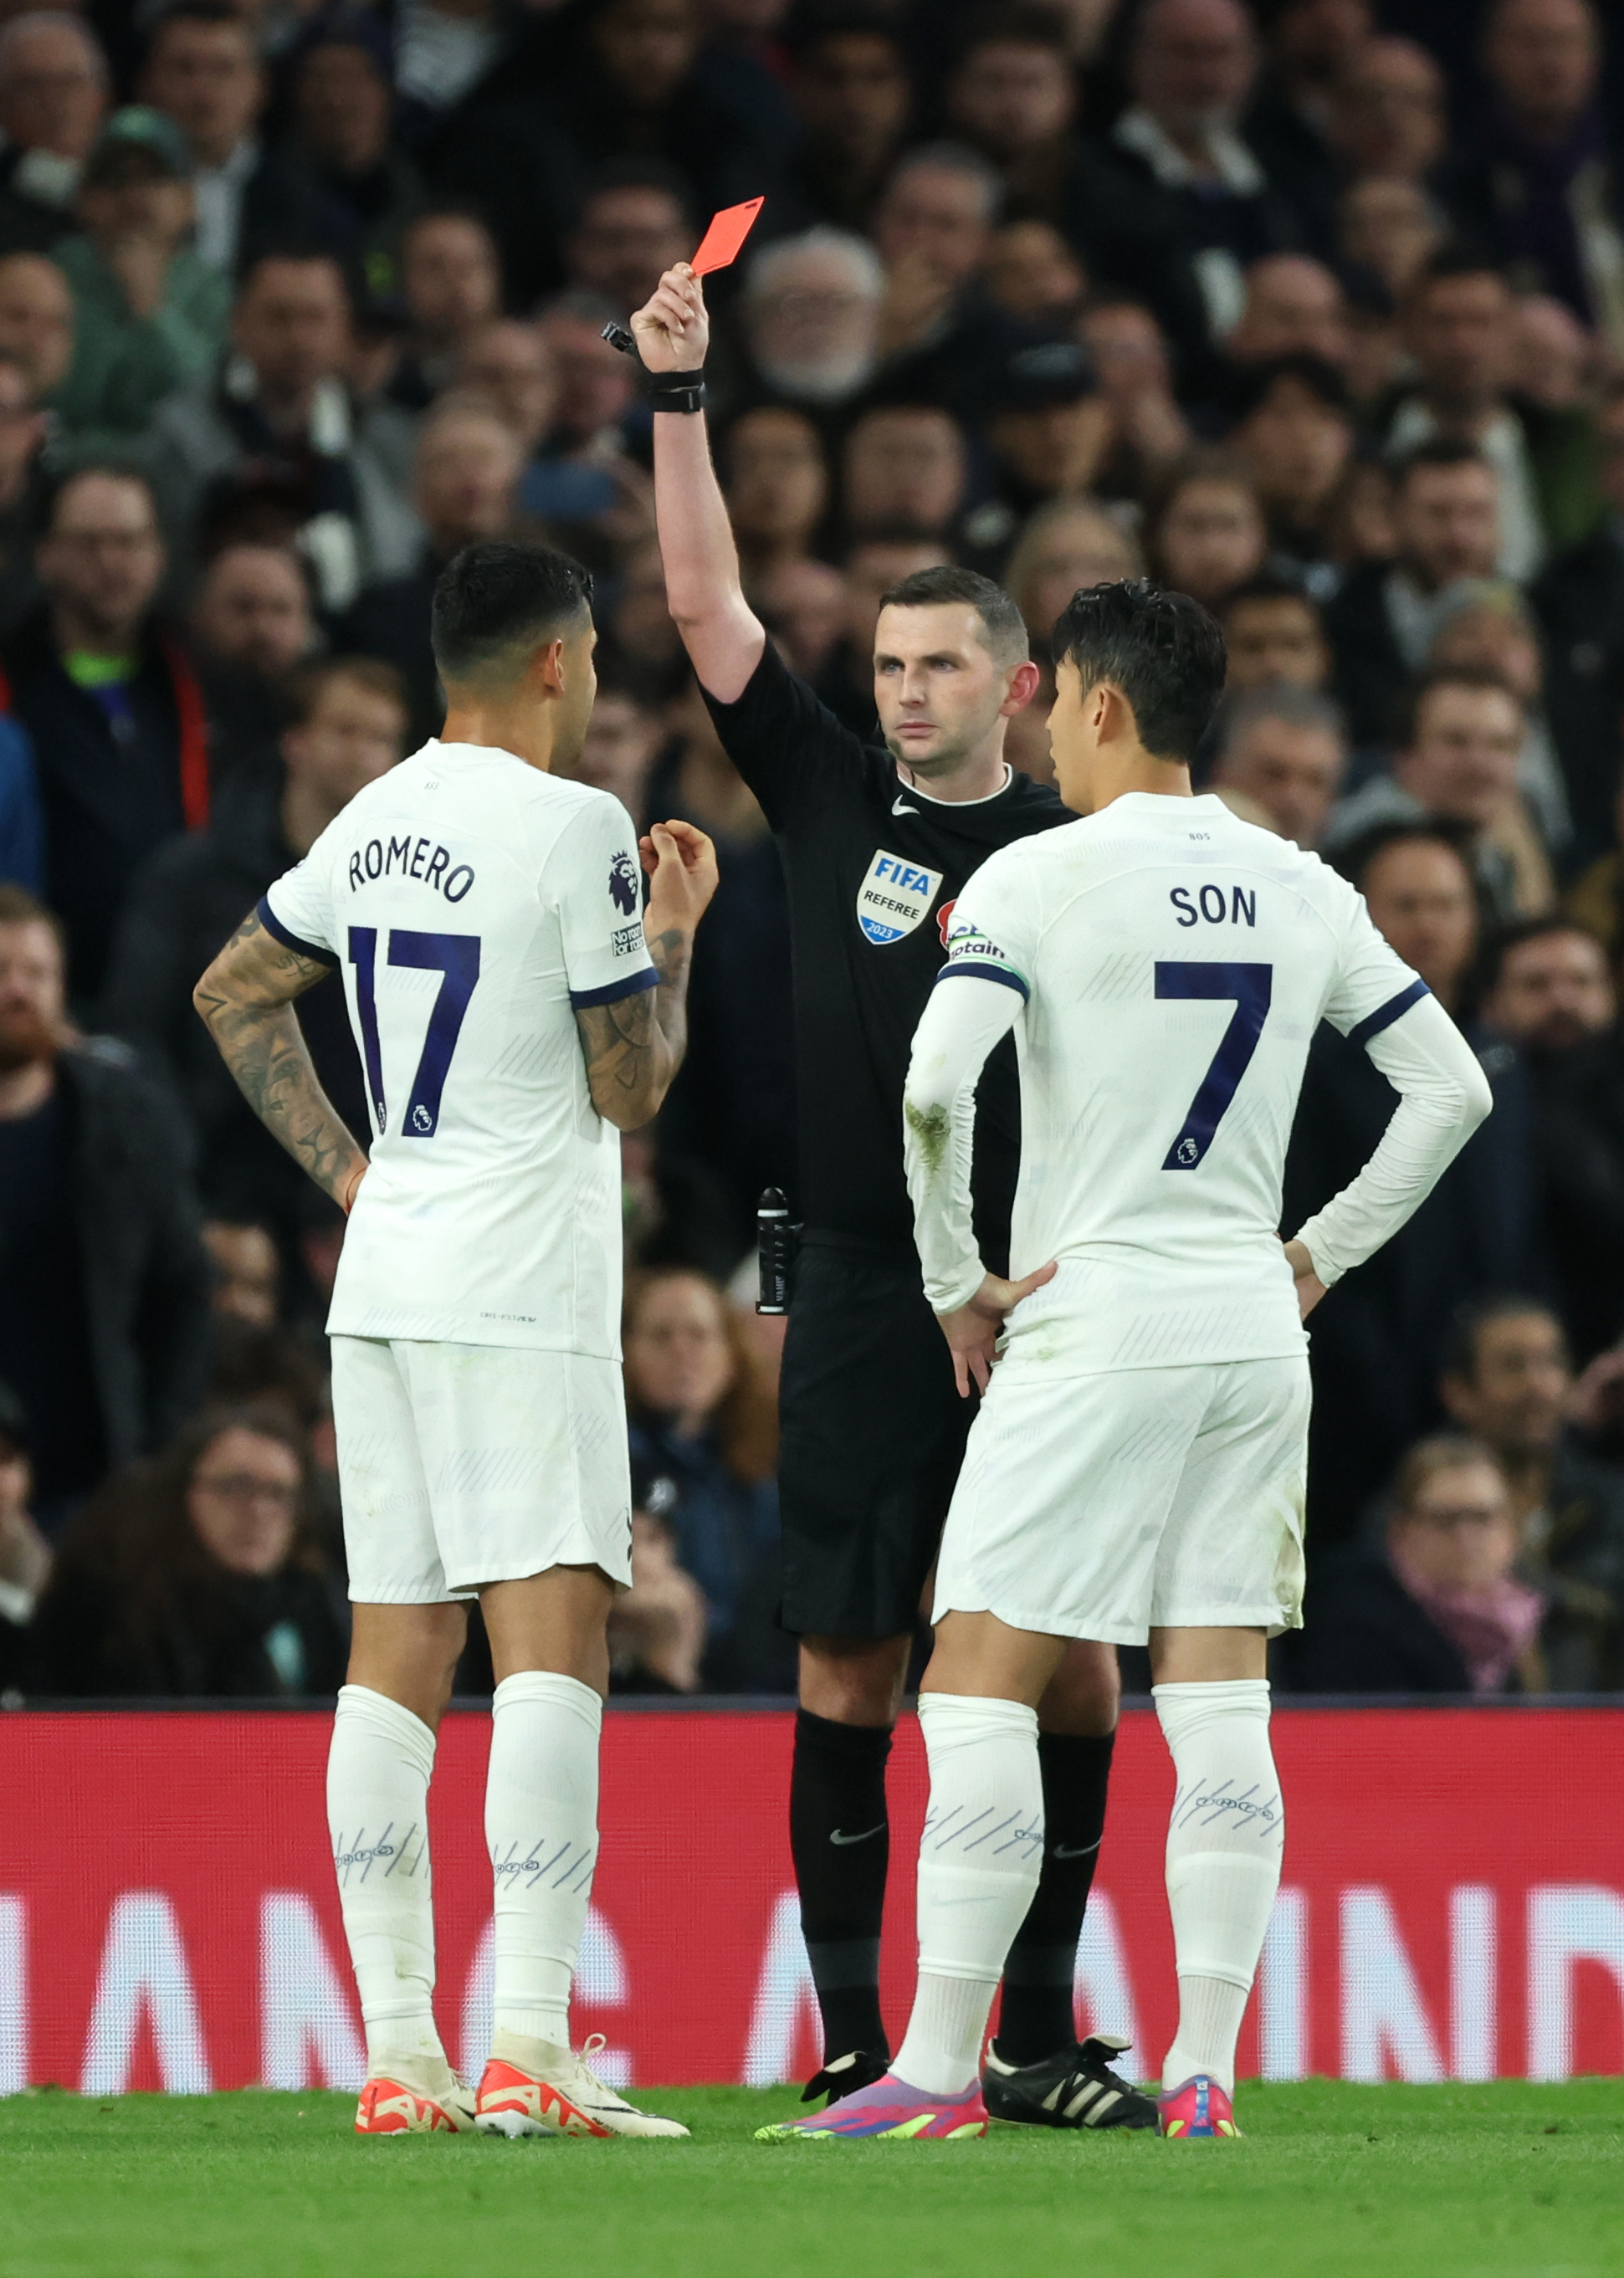 Der Argentinier wurde während Tottenhams Besuch an der Stamford Bridge im Oktober vom Platz gestellt